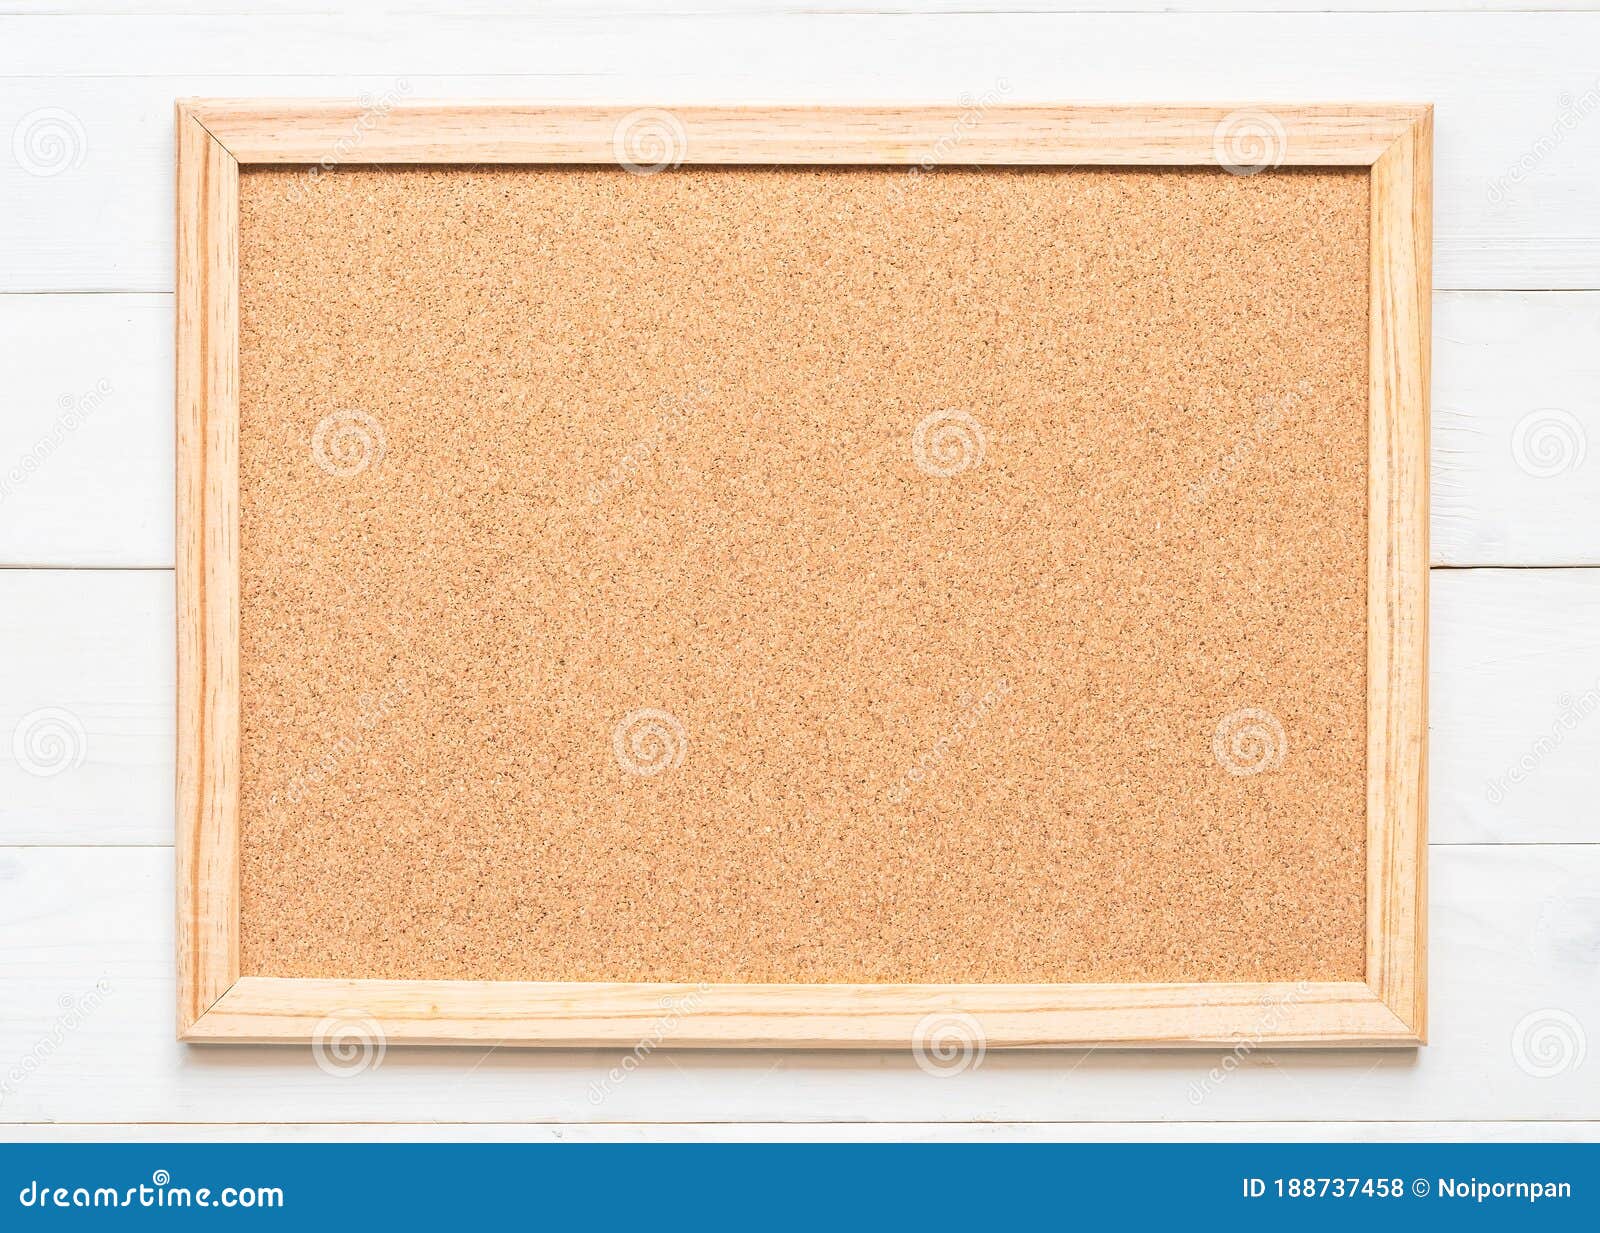 5 Star Office 915560 60 x 100 cm Tablero de corcho de pared con marco de madera